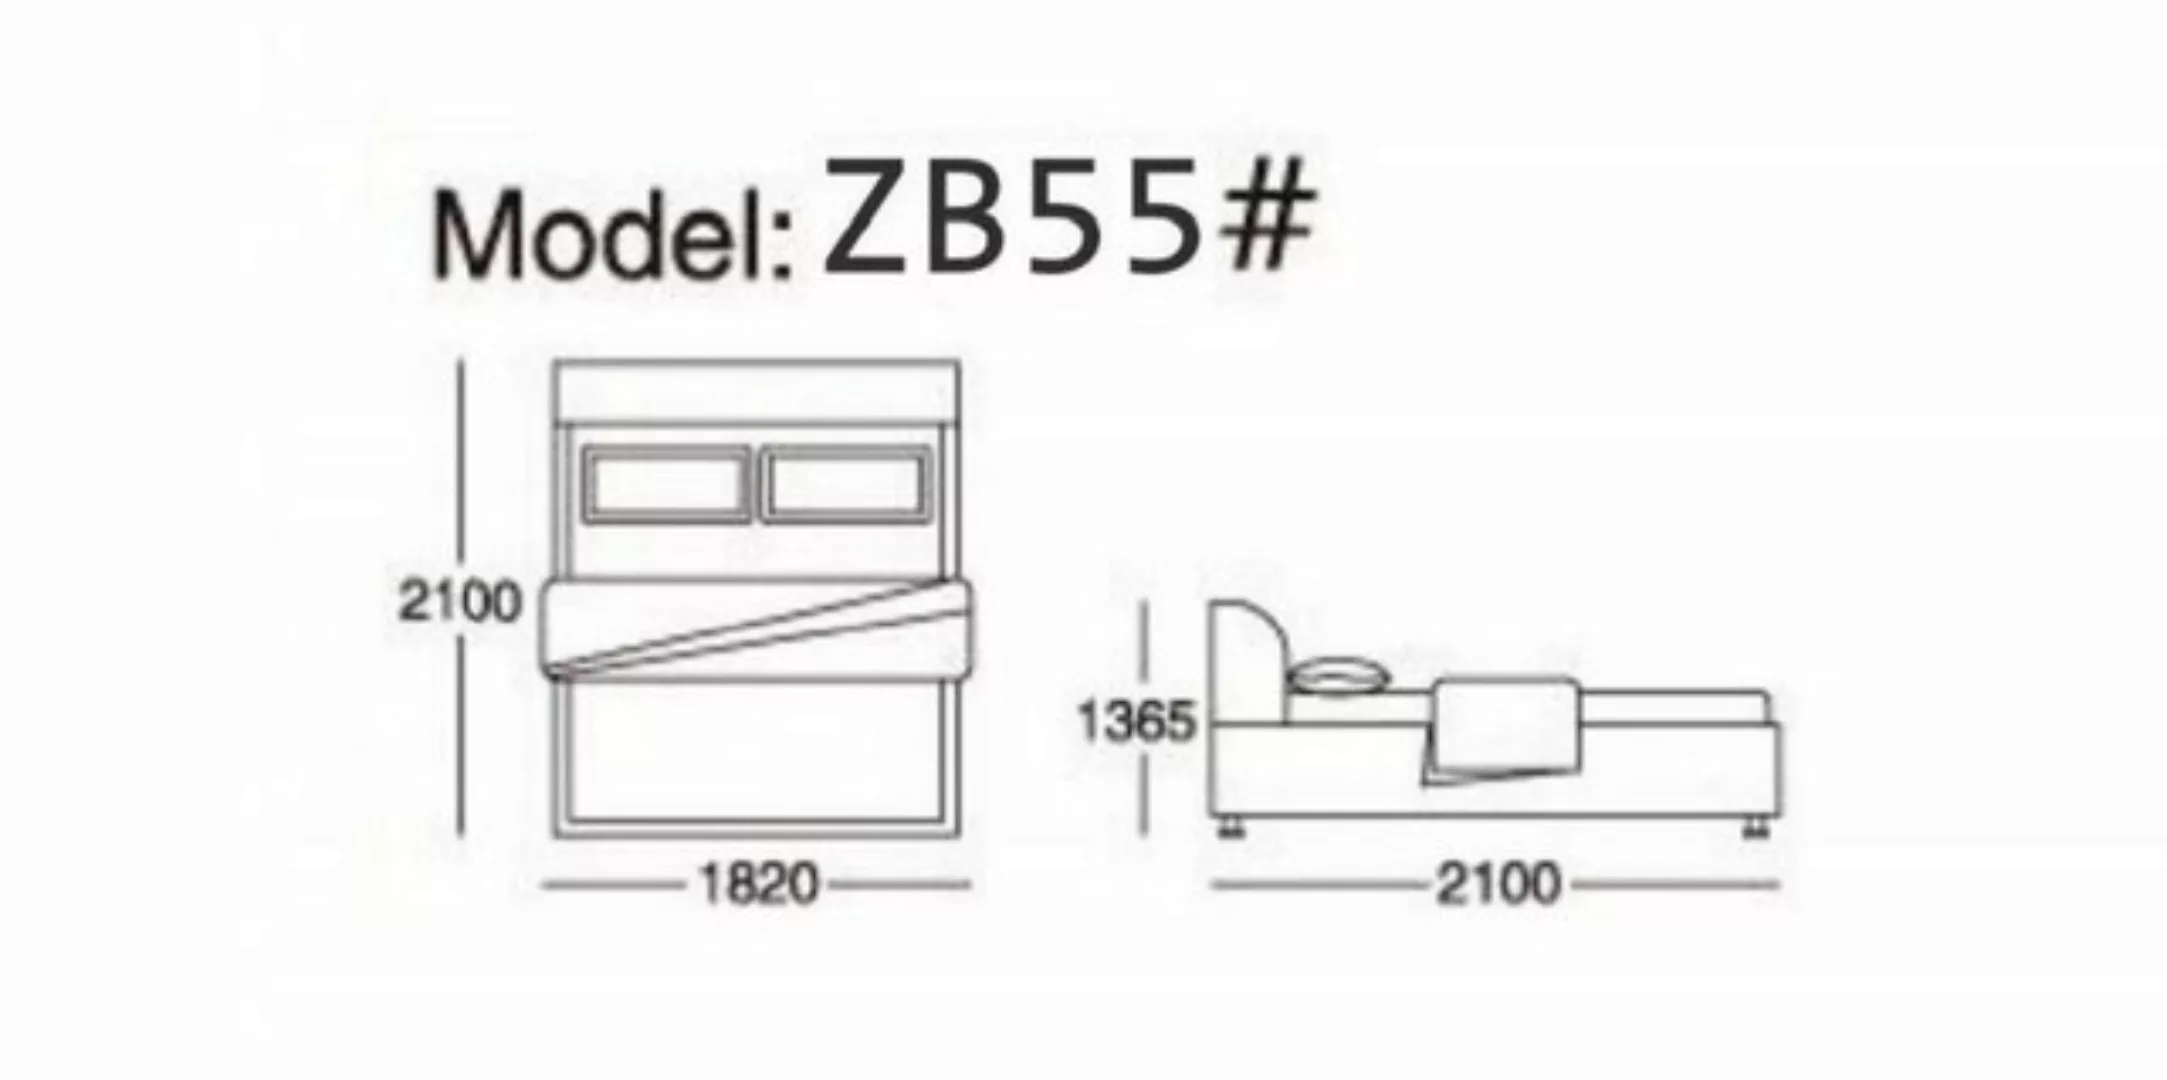 JVmoebel Bett, Bett 180x200cm Textil Schlafzimmer Möbel Luxury Moderne Bett günstig online kaufen